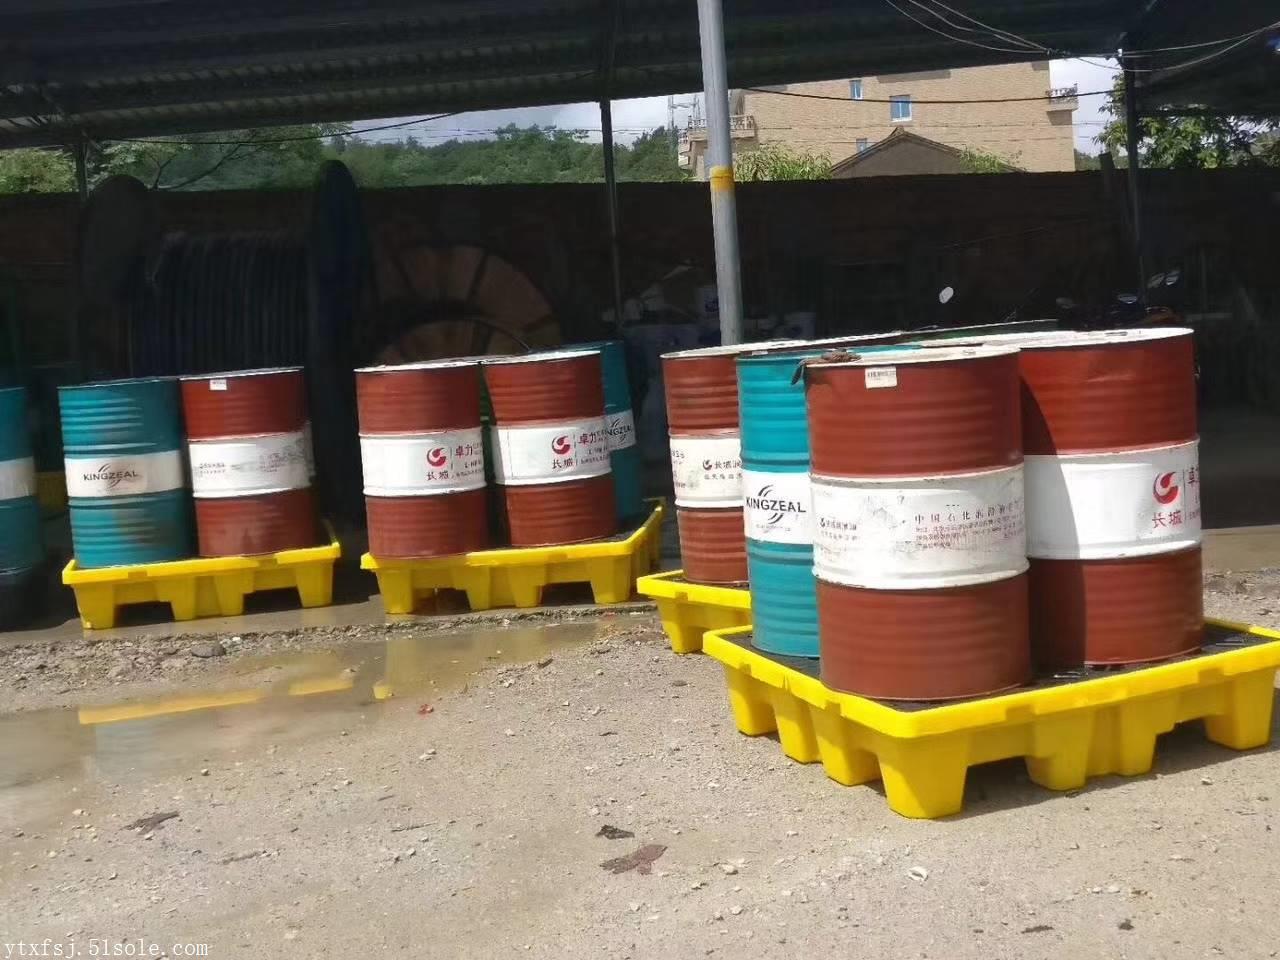 烟台四桶两桶装防渗漏托盘专业生产厂家 全国